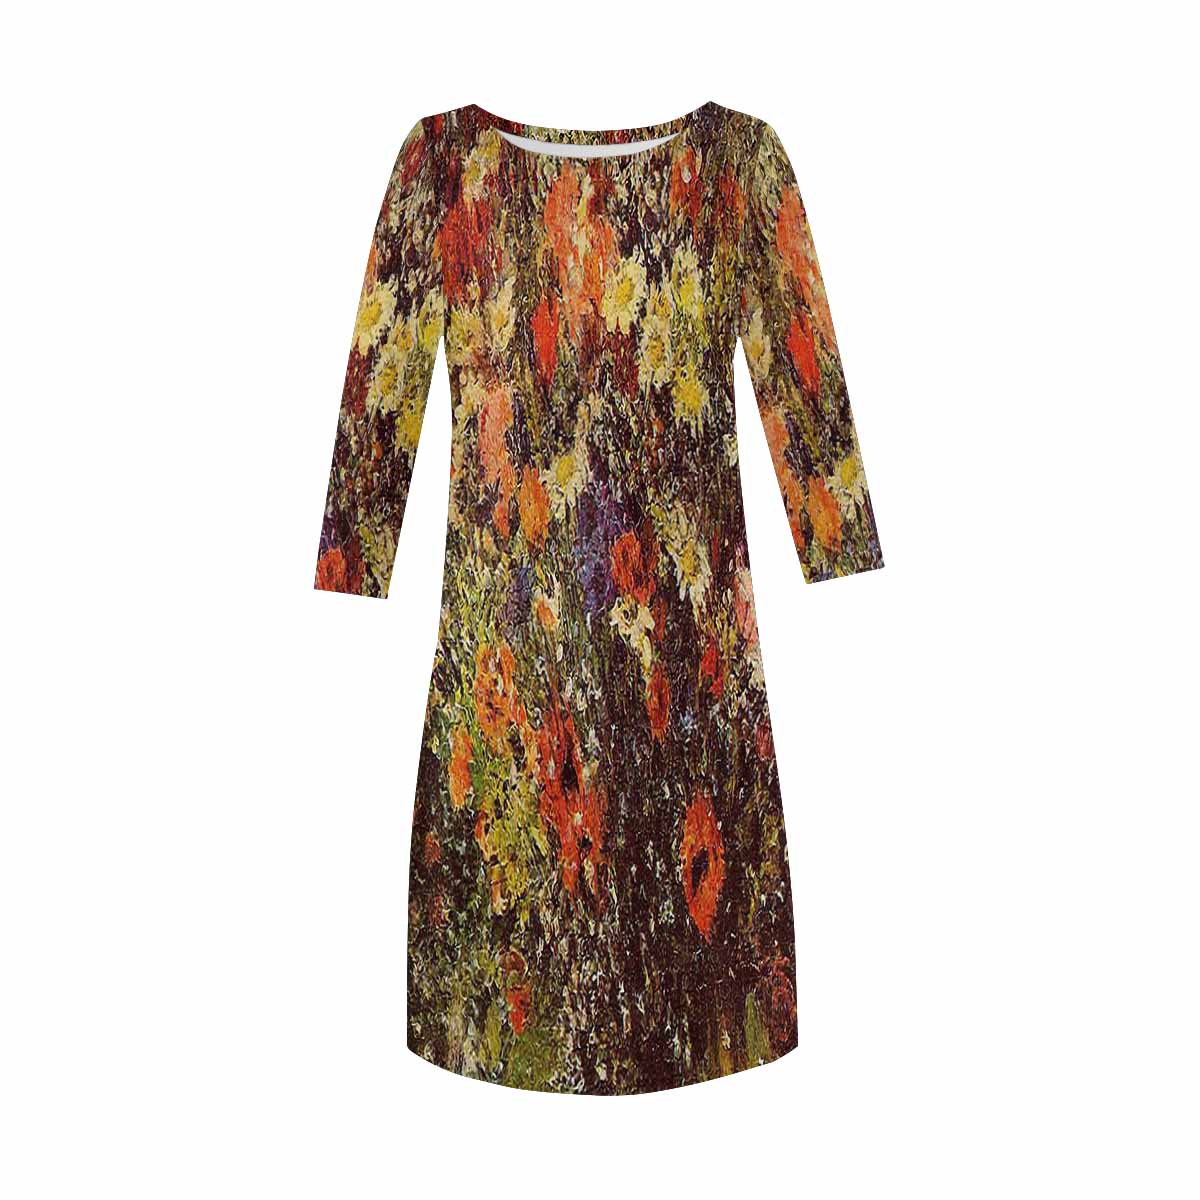 Vintage floral loose dress, model D29532 Design 24